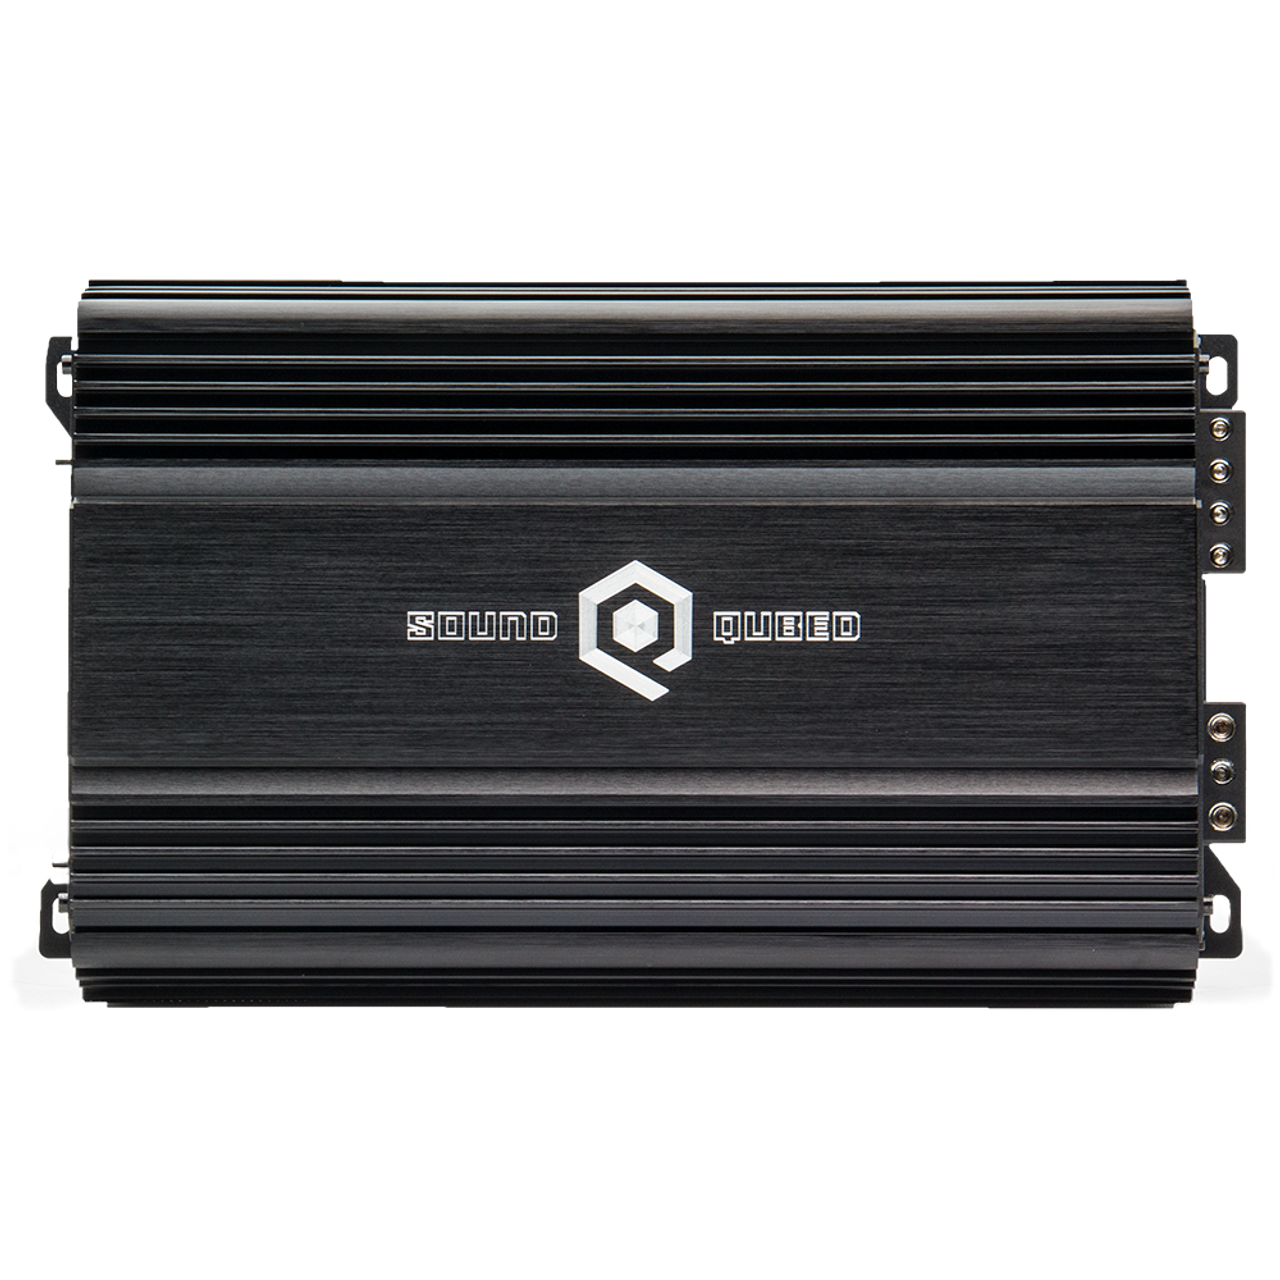 SOUNDQUBED S1-1250 S Series Monoblock Amplifier